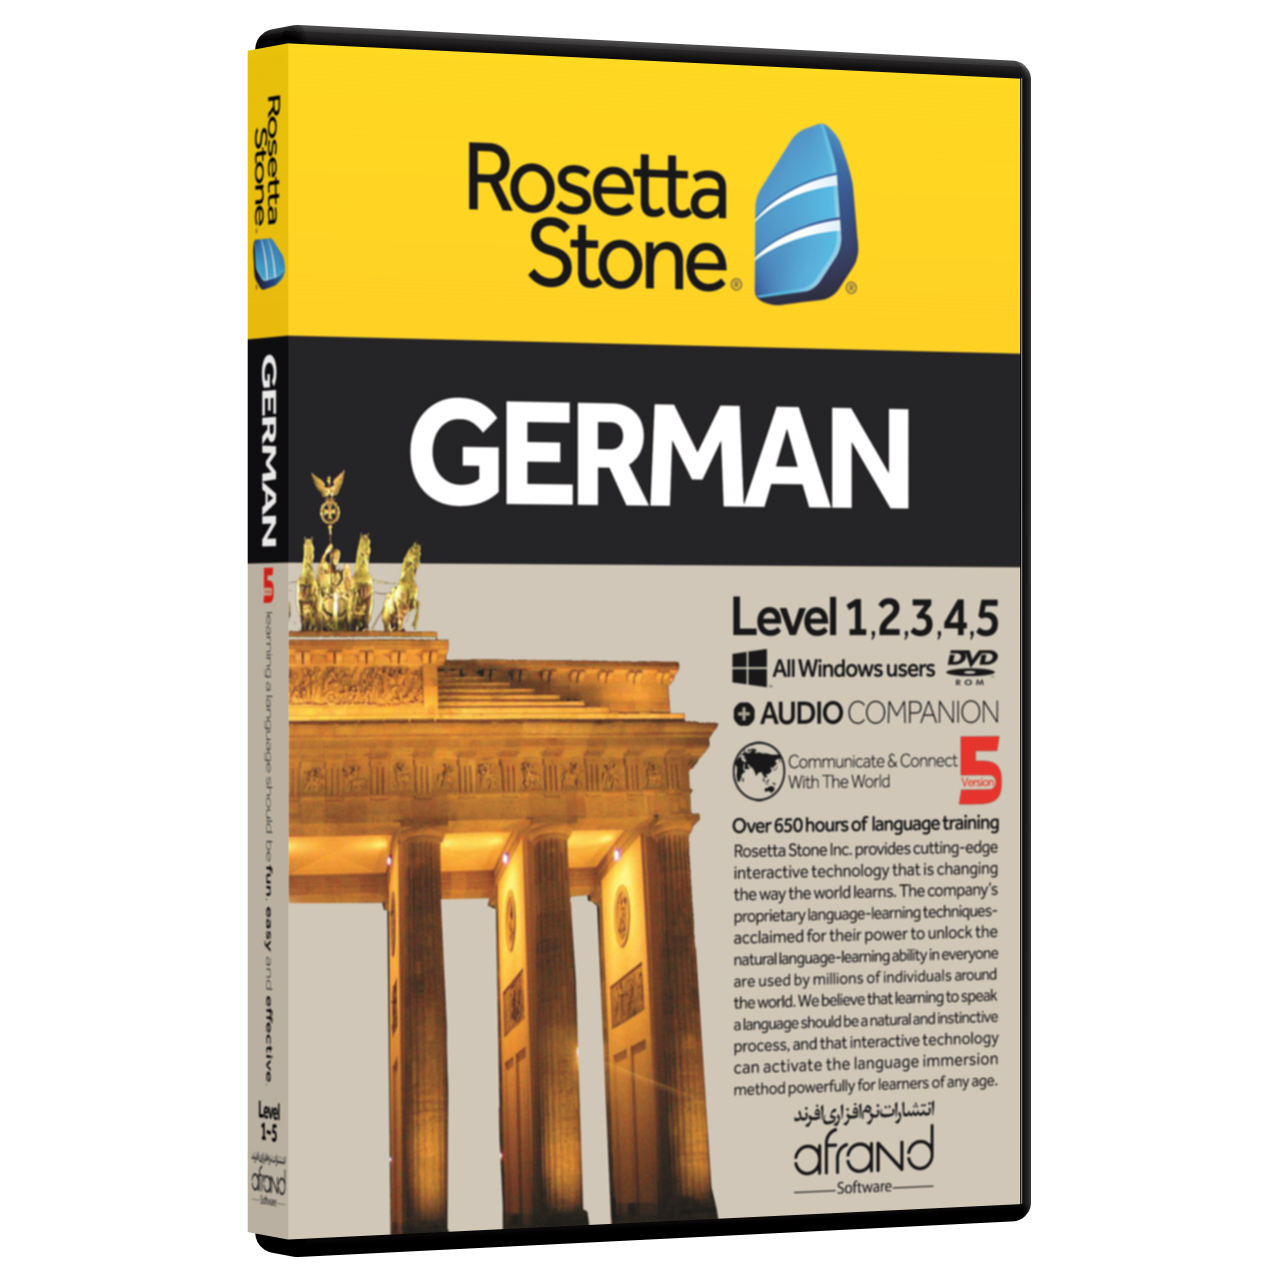 نرم افزار آموزش زبان آلمانی رزتااستون نسخه 5 انتشارات نرم افزاری افرند